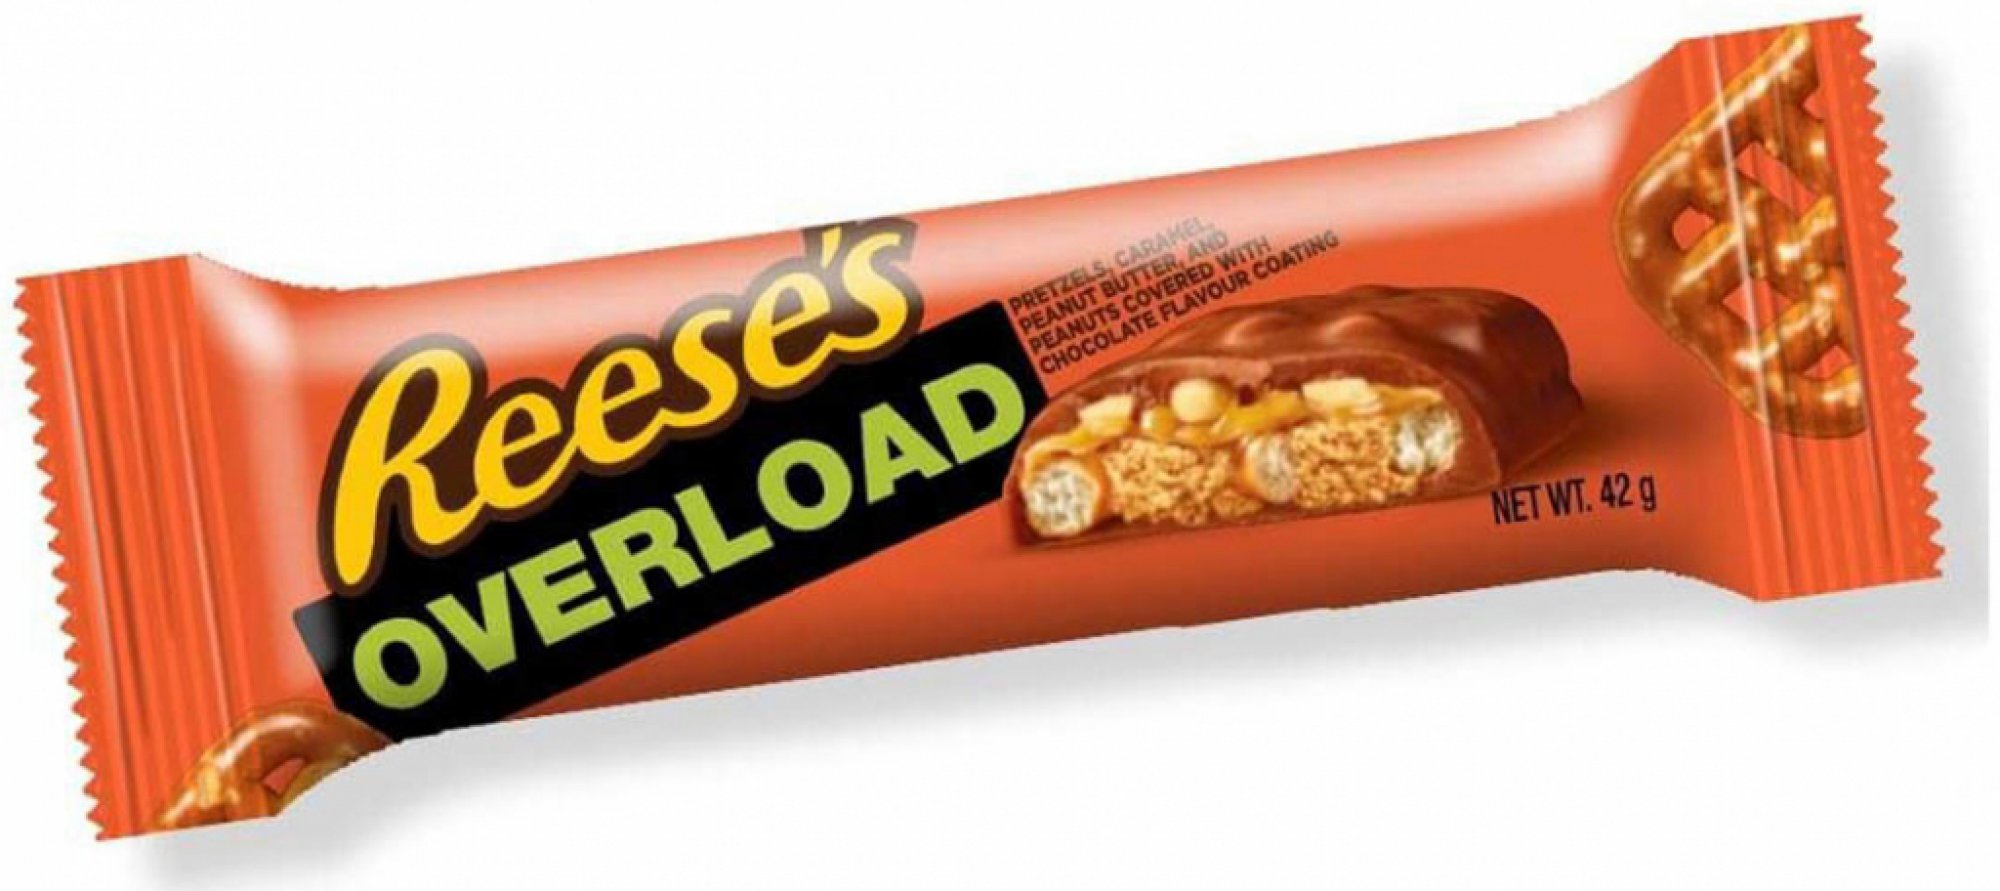 Reeses Overload Bar 42 g Křupavá tyčinka Reeses obsahující preclíky, karamel, arašídové máslo a arašídy, vše obalené v čokoládové polevě

Složení: poleva s příchutí mléčné čokolády (45%) (cukr, rostlinný olej (palmový  ...